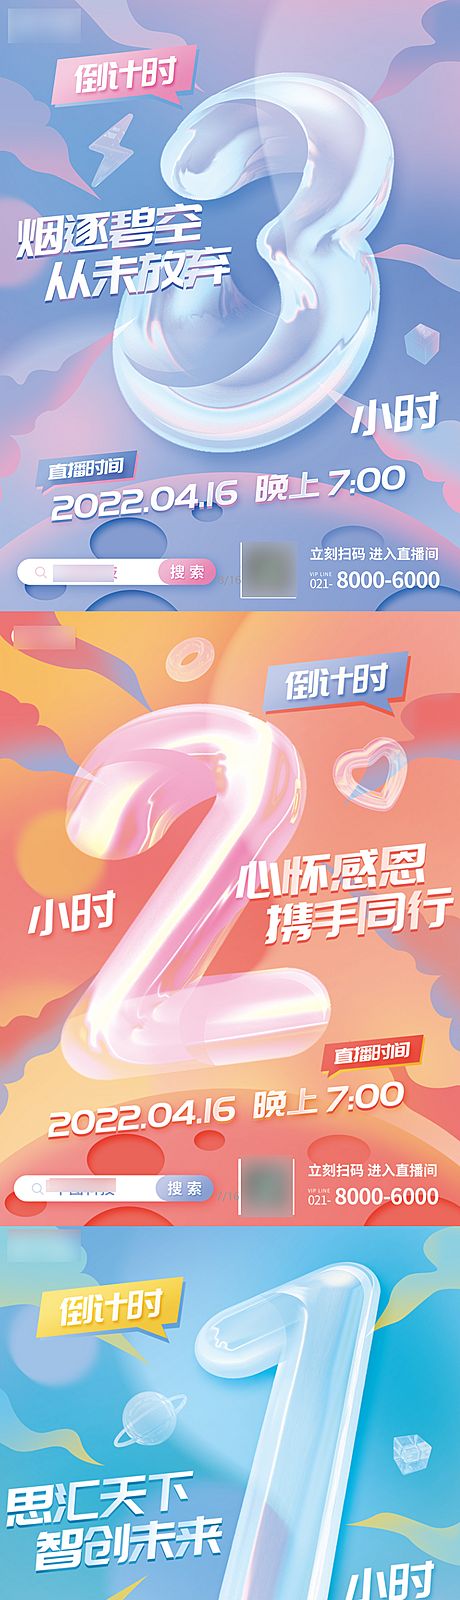 仙图网-企业周年庆直播活动倒计时系列海报